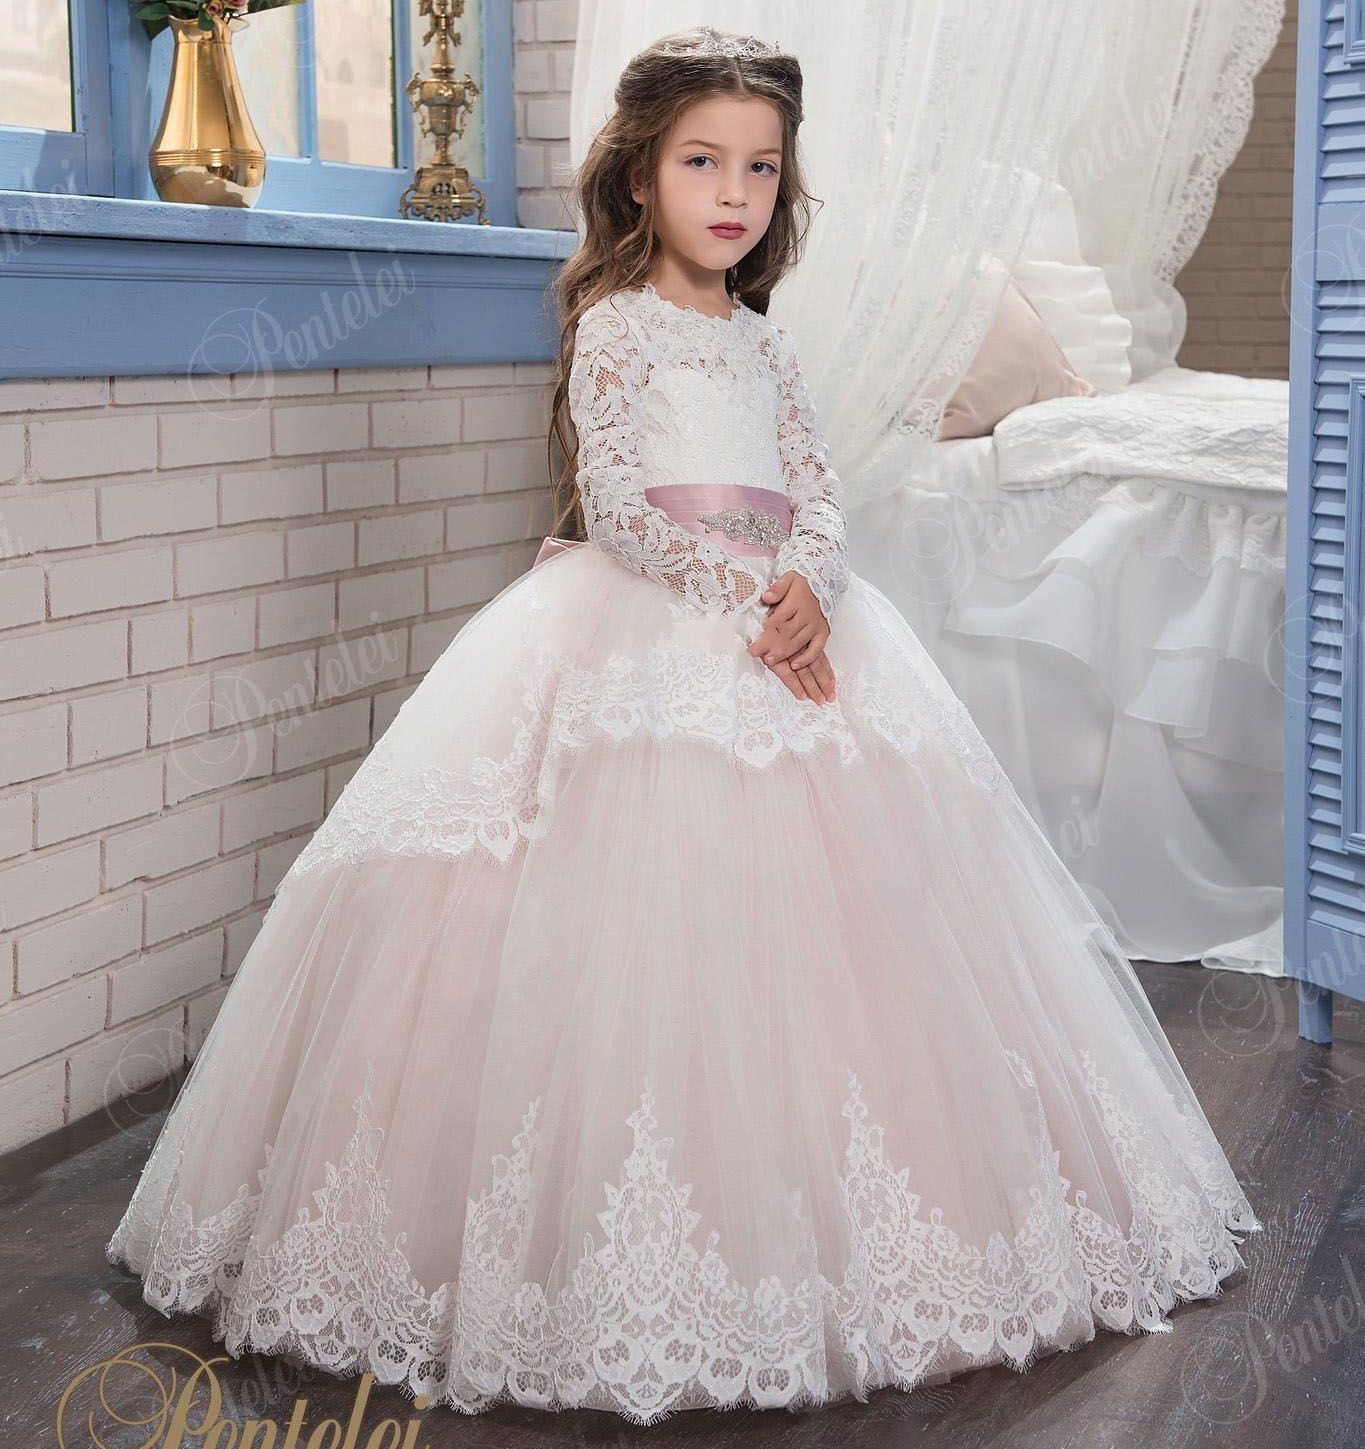 2017 vestidos de niña las flores de encaje bodas se ruborizan rosa largas vestido de bola princesa primera comunión vestido niñas vestidos de fiesta del desfile